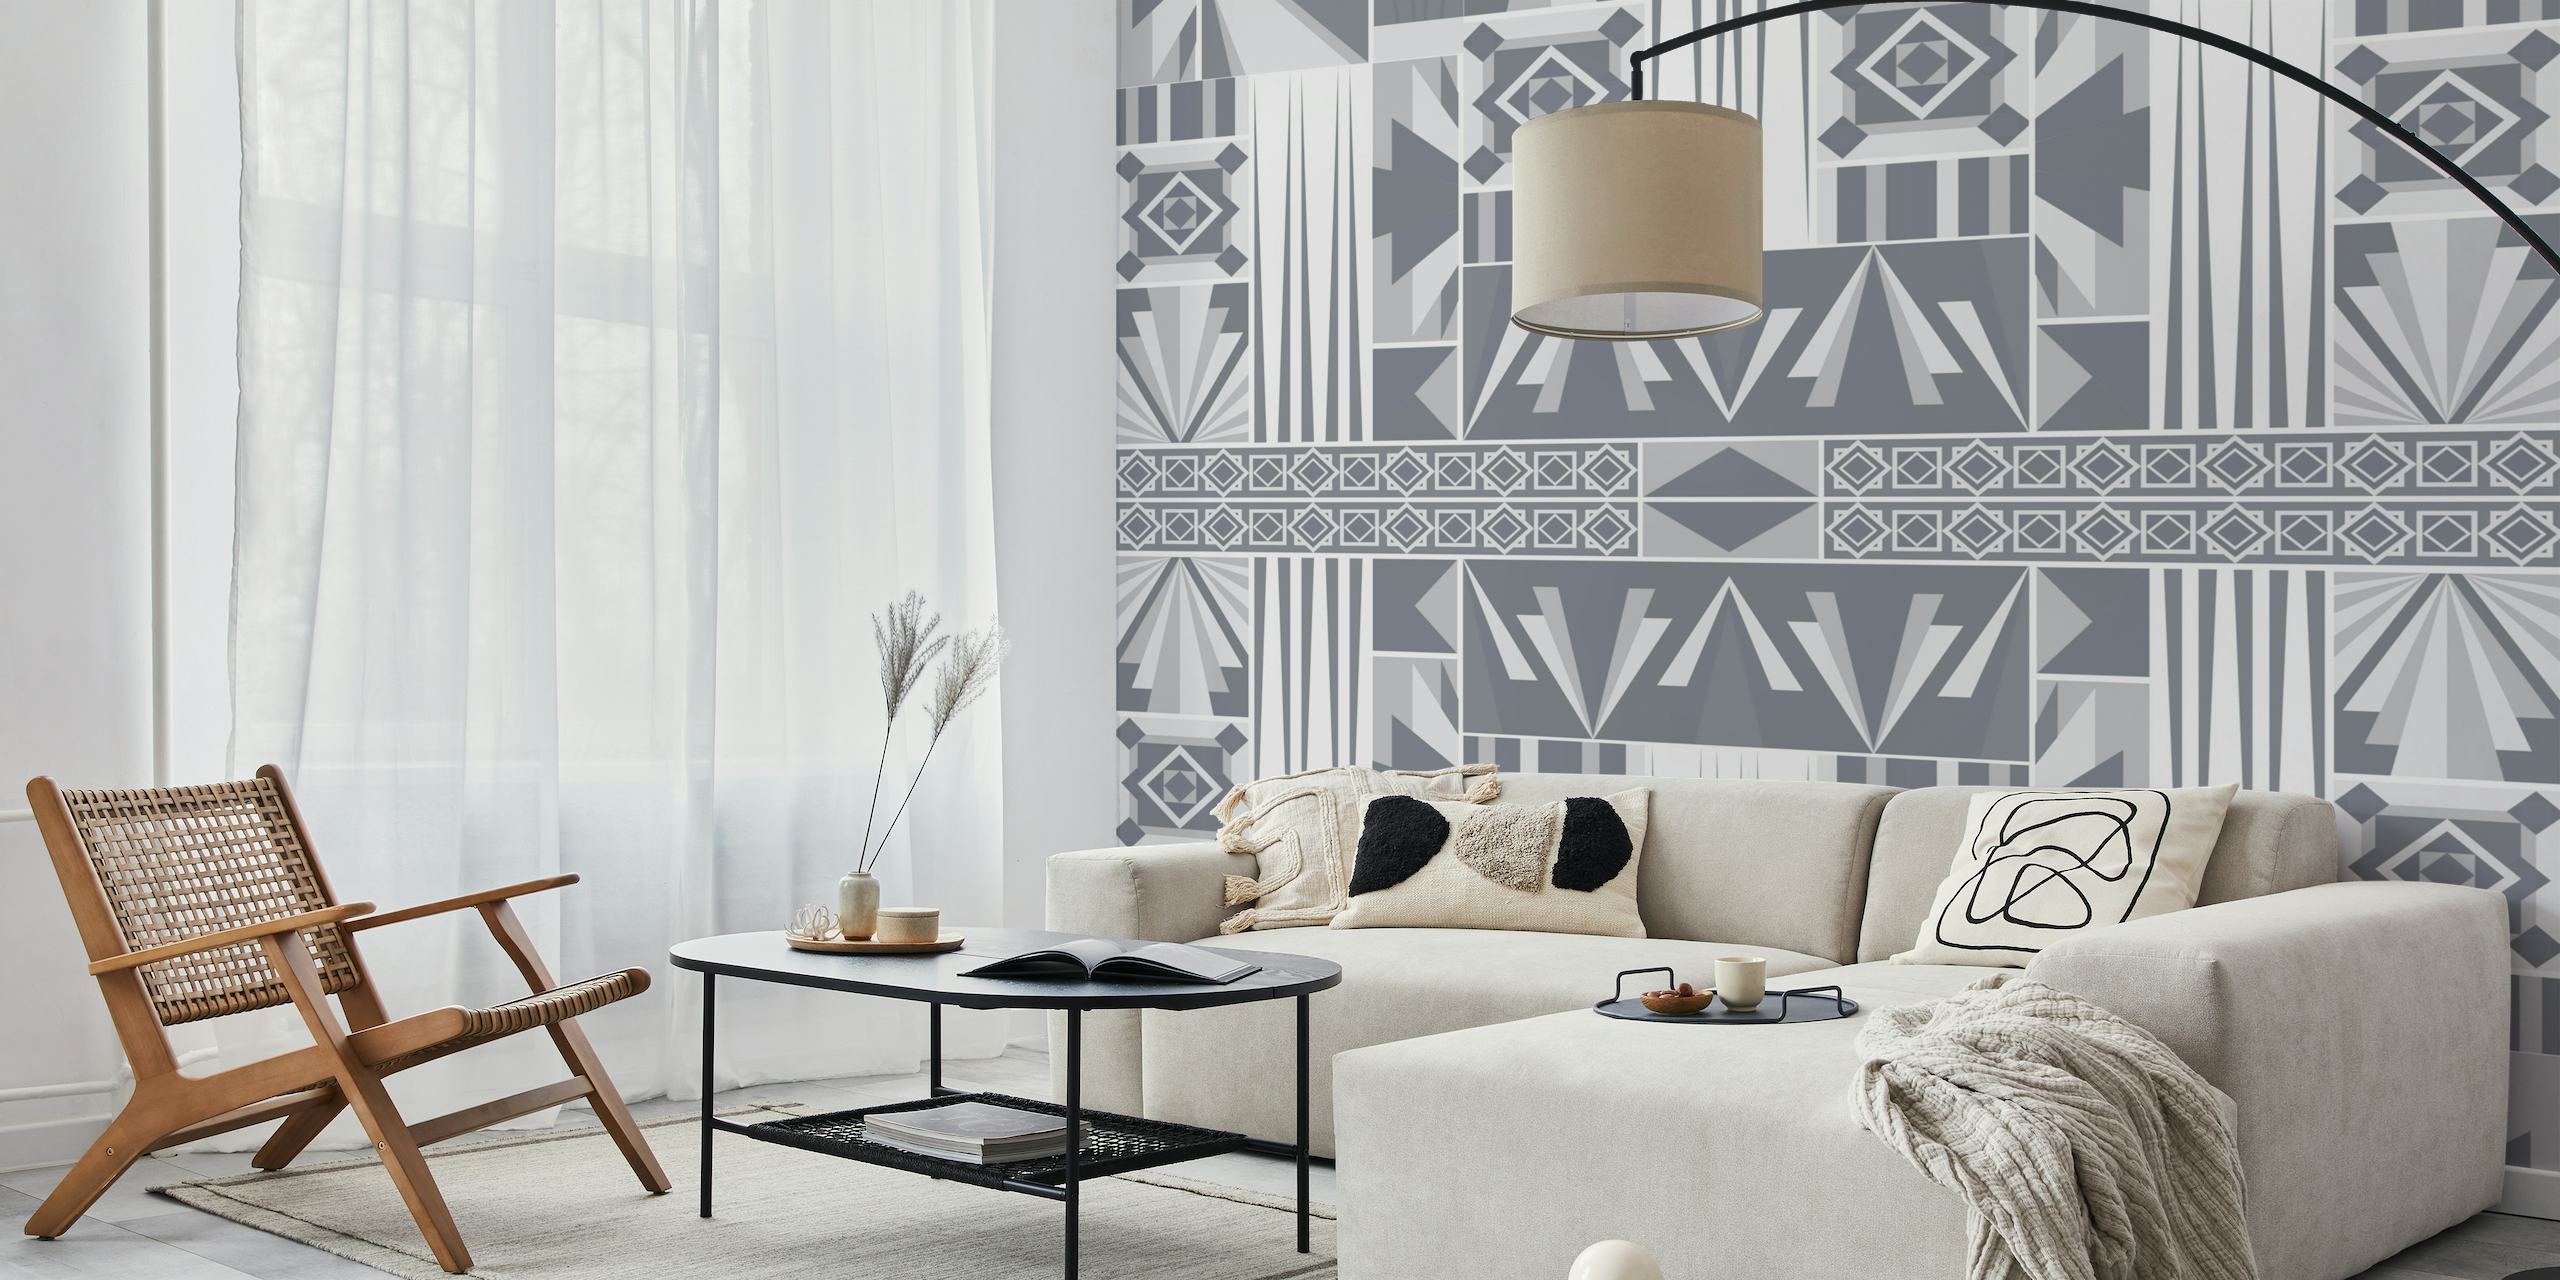 Fotomural estilo Art Déco con formas geométricas en plata y gris